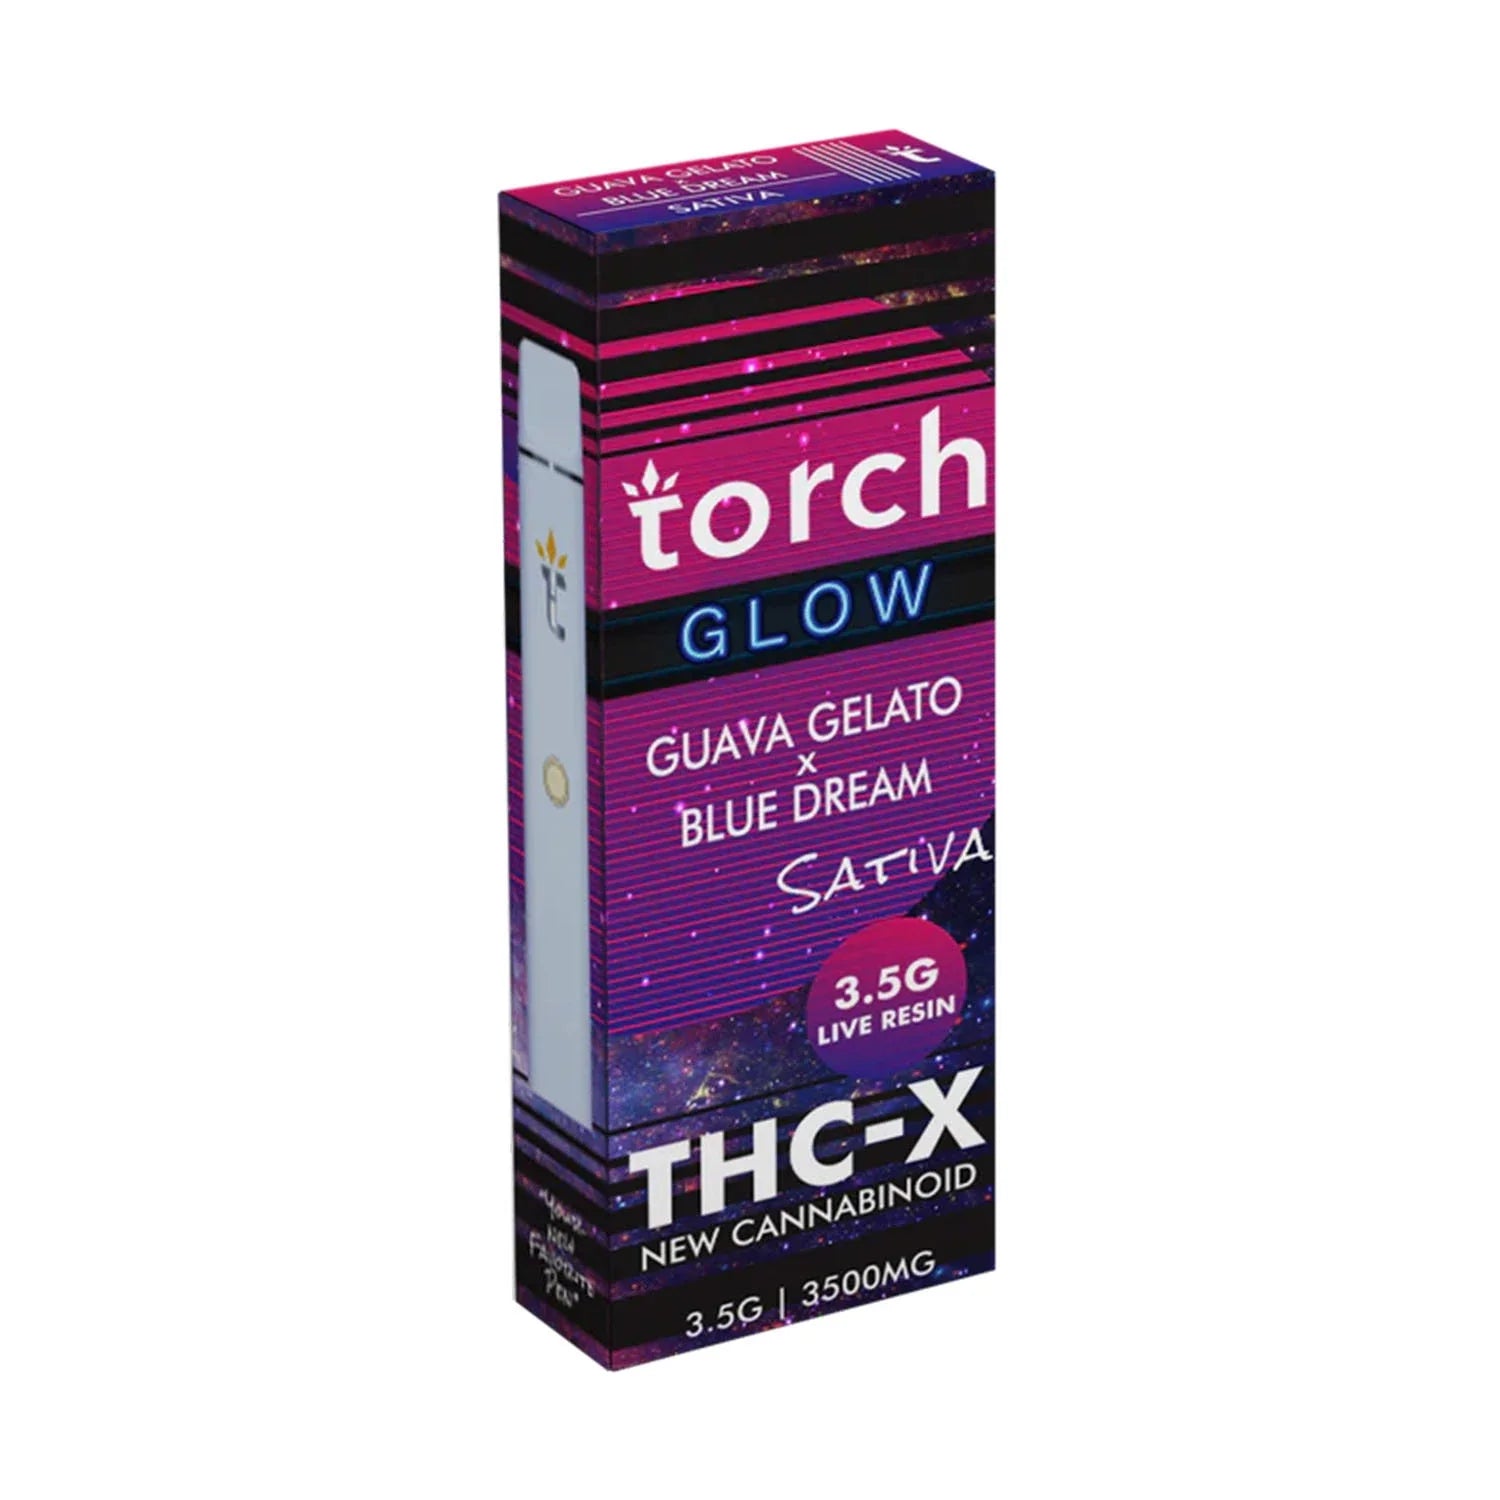 Torch Glow Guava Gelato x Blue Dream THC-X Disposable (3.5g) Best Price